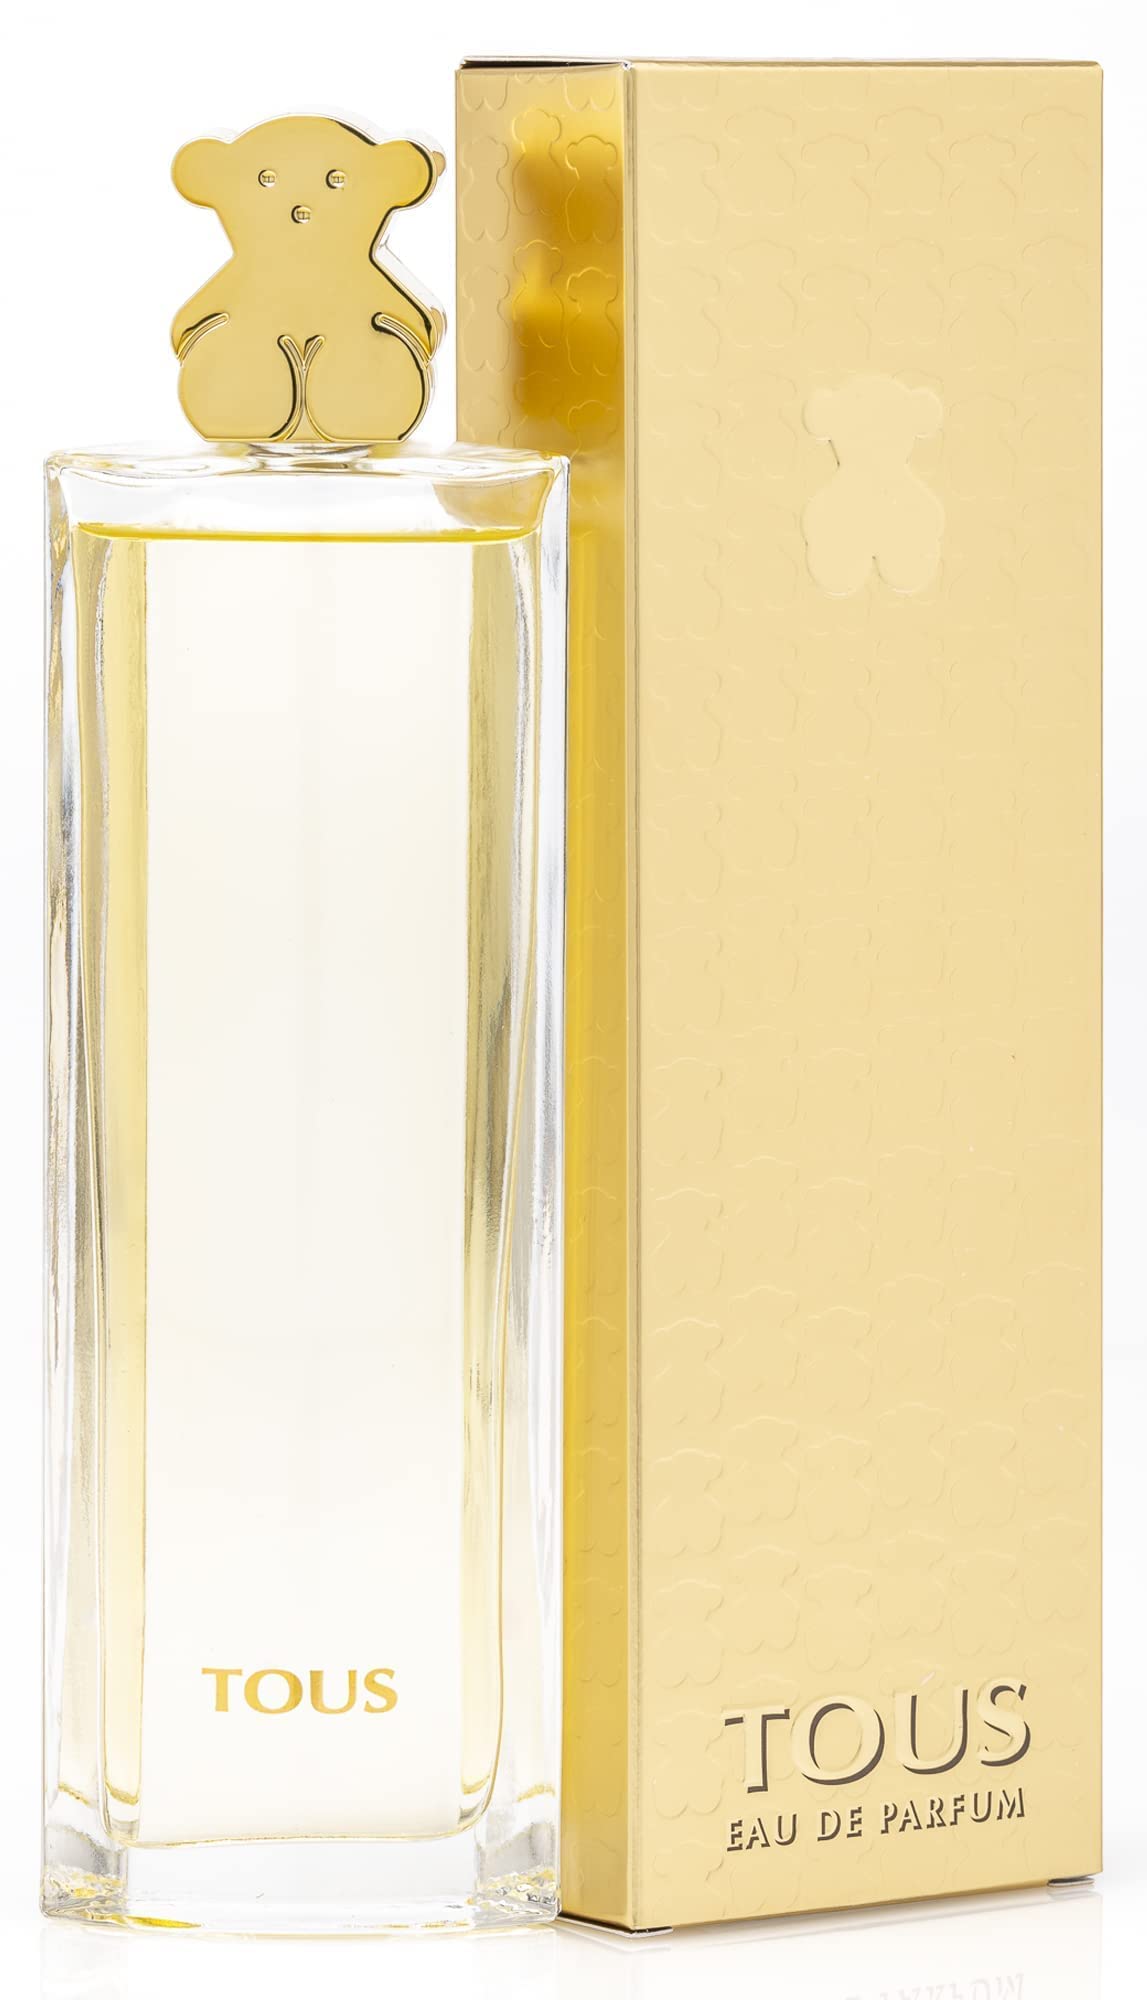 TOUS Gold By TOUS For Women, Eau De Parfum Spray, 3 Fl Oz